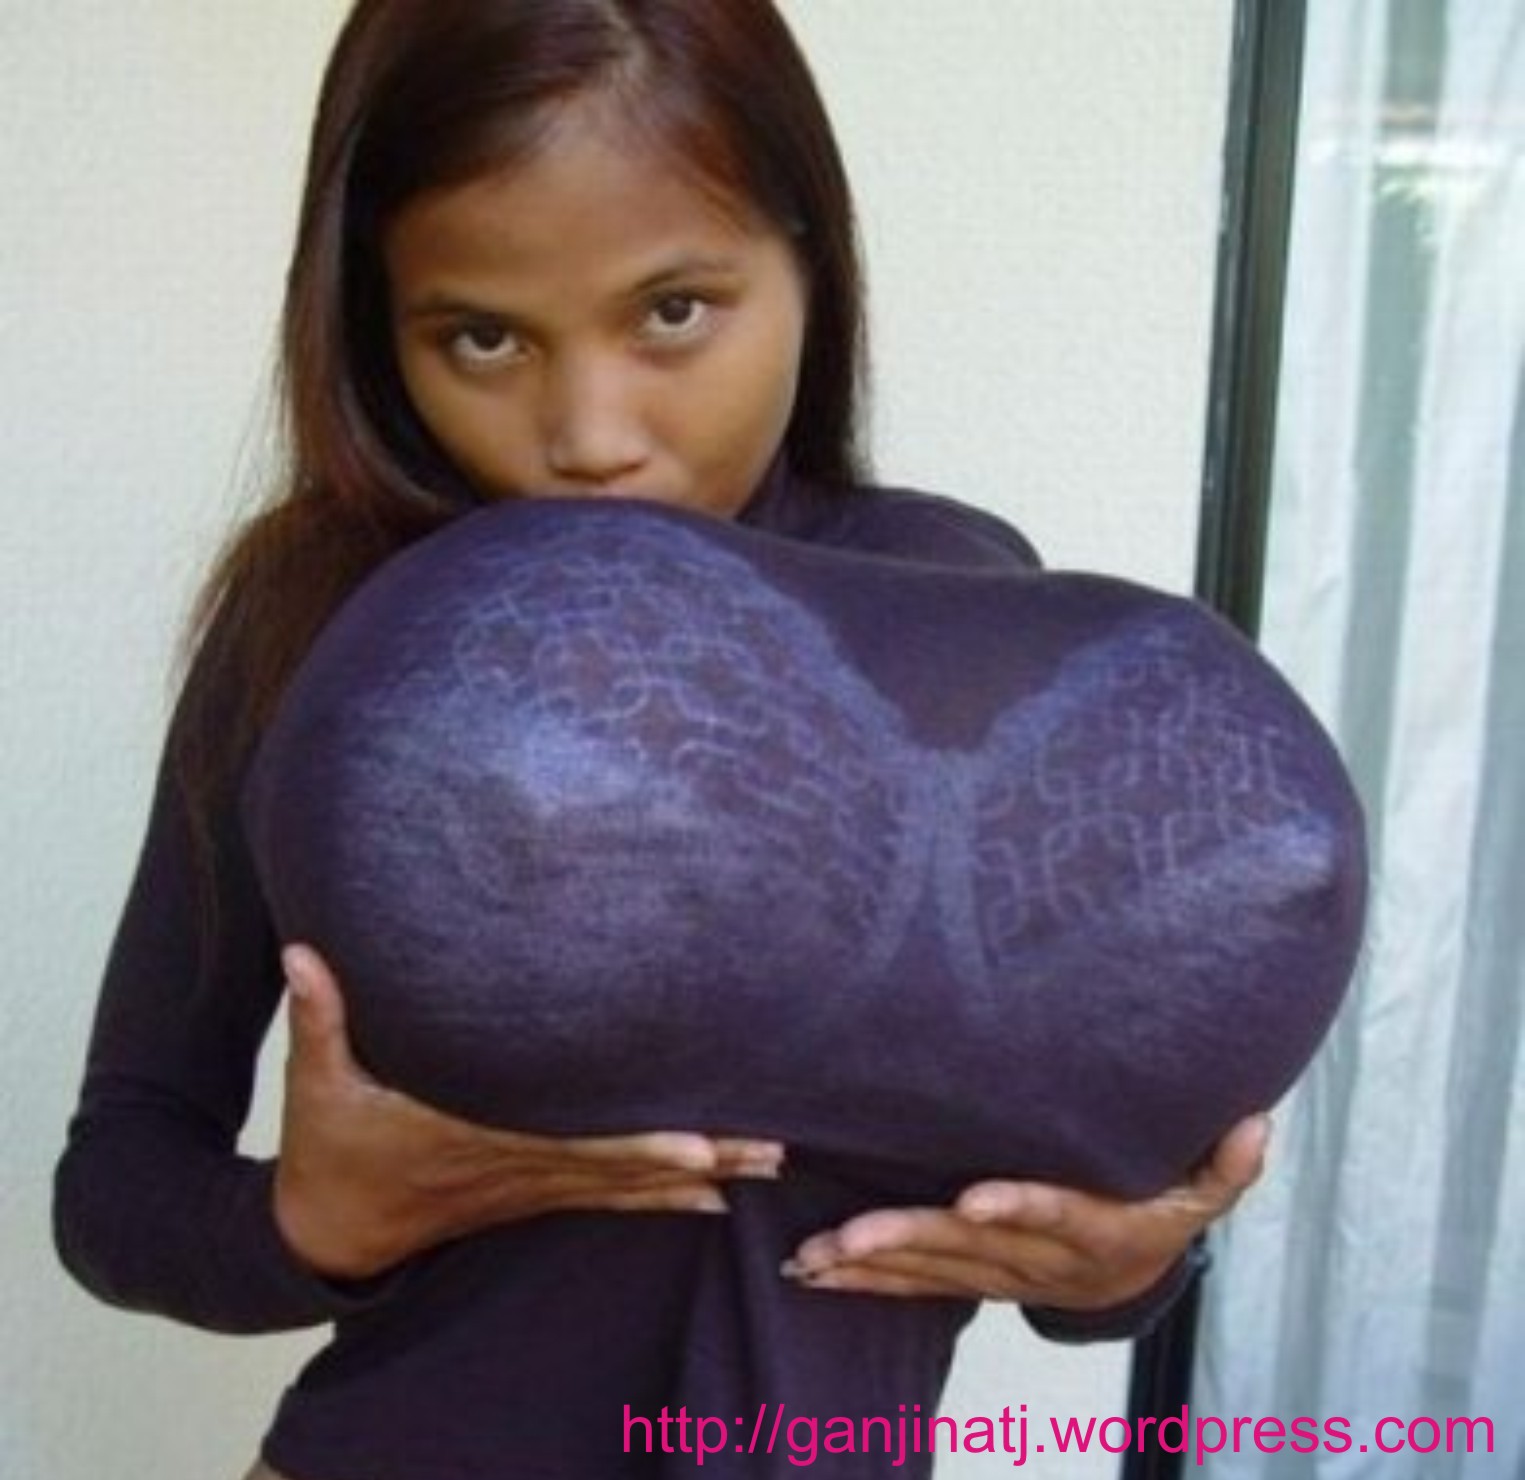 огромная грудь женщин мира фото 109